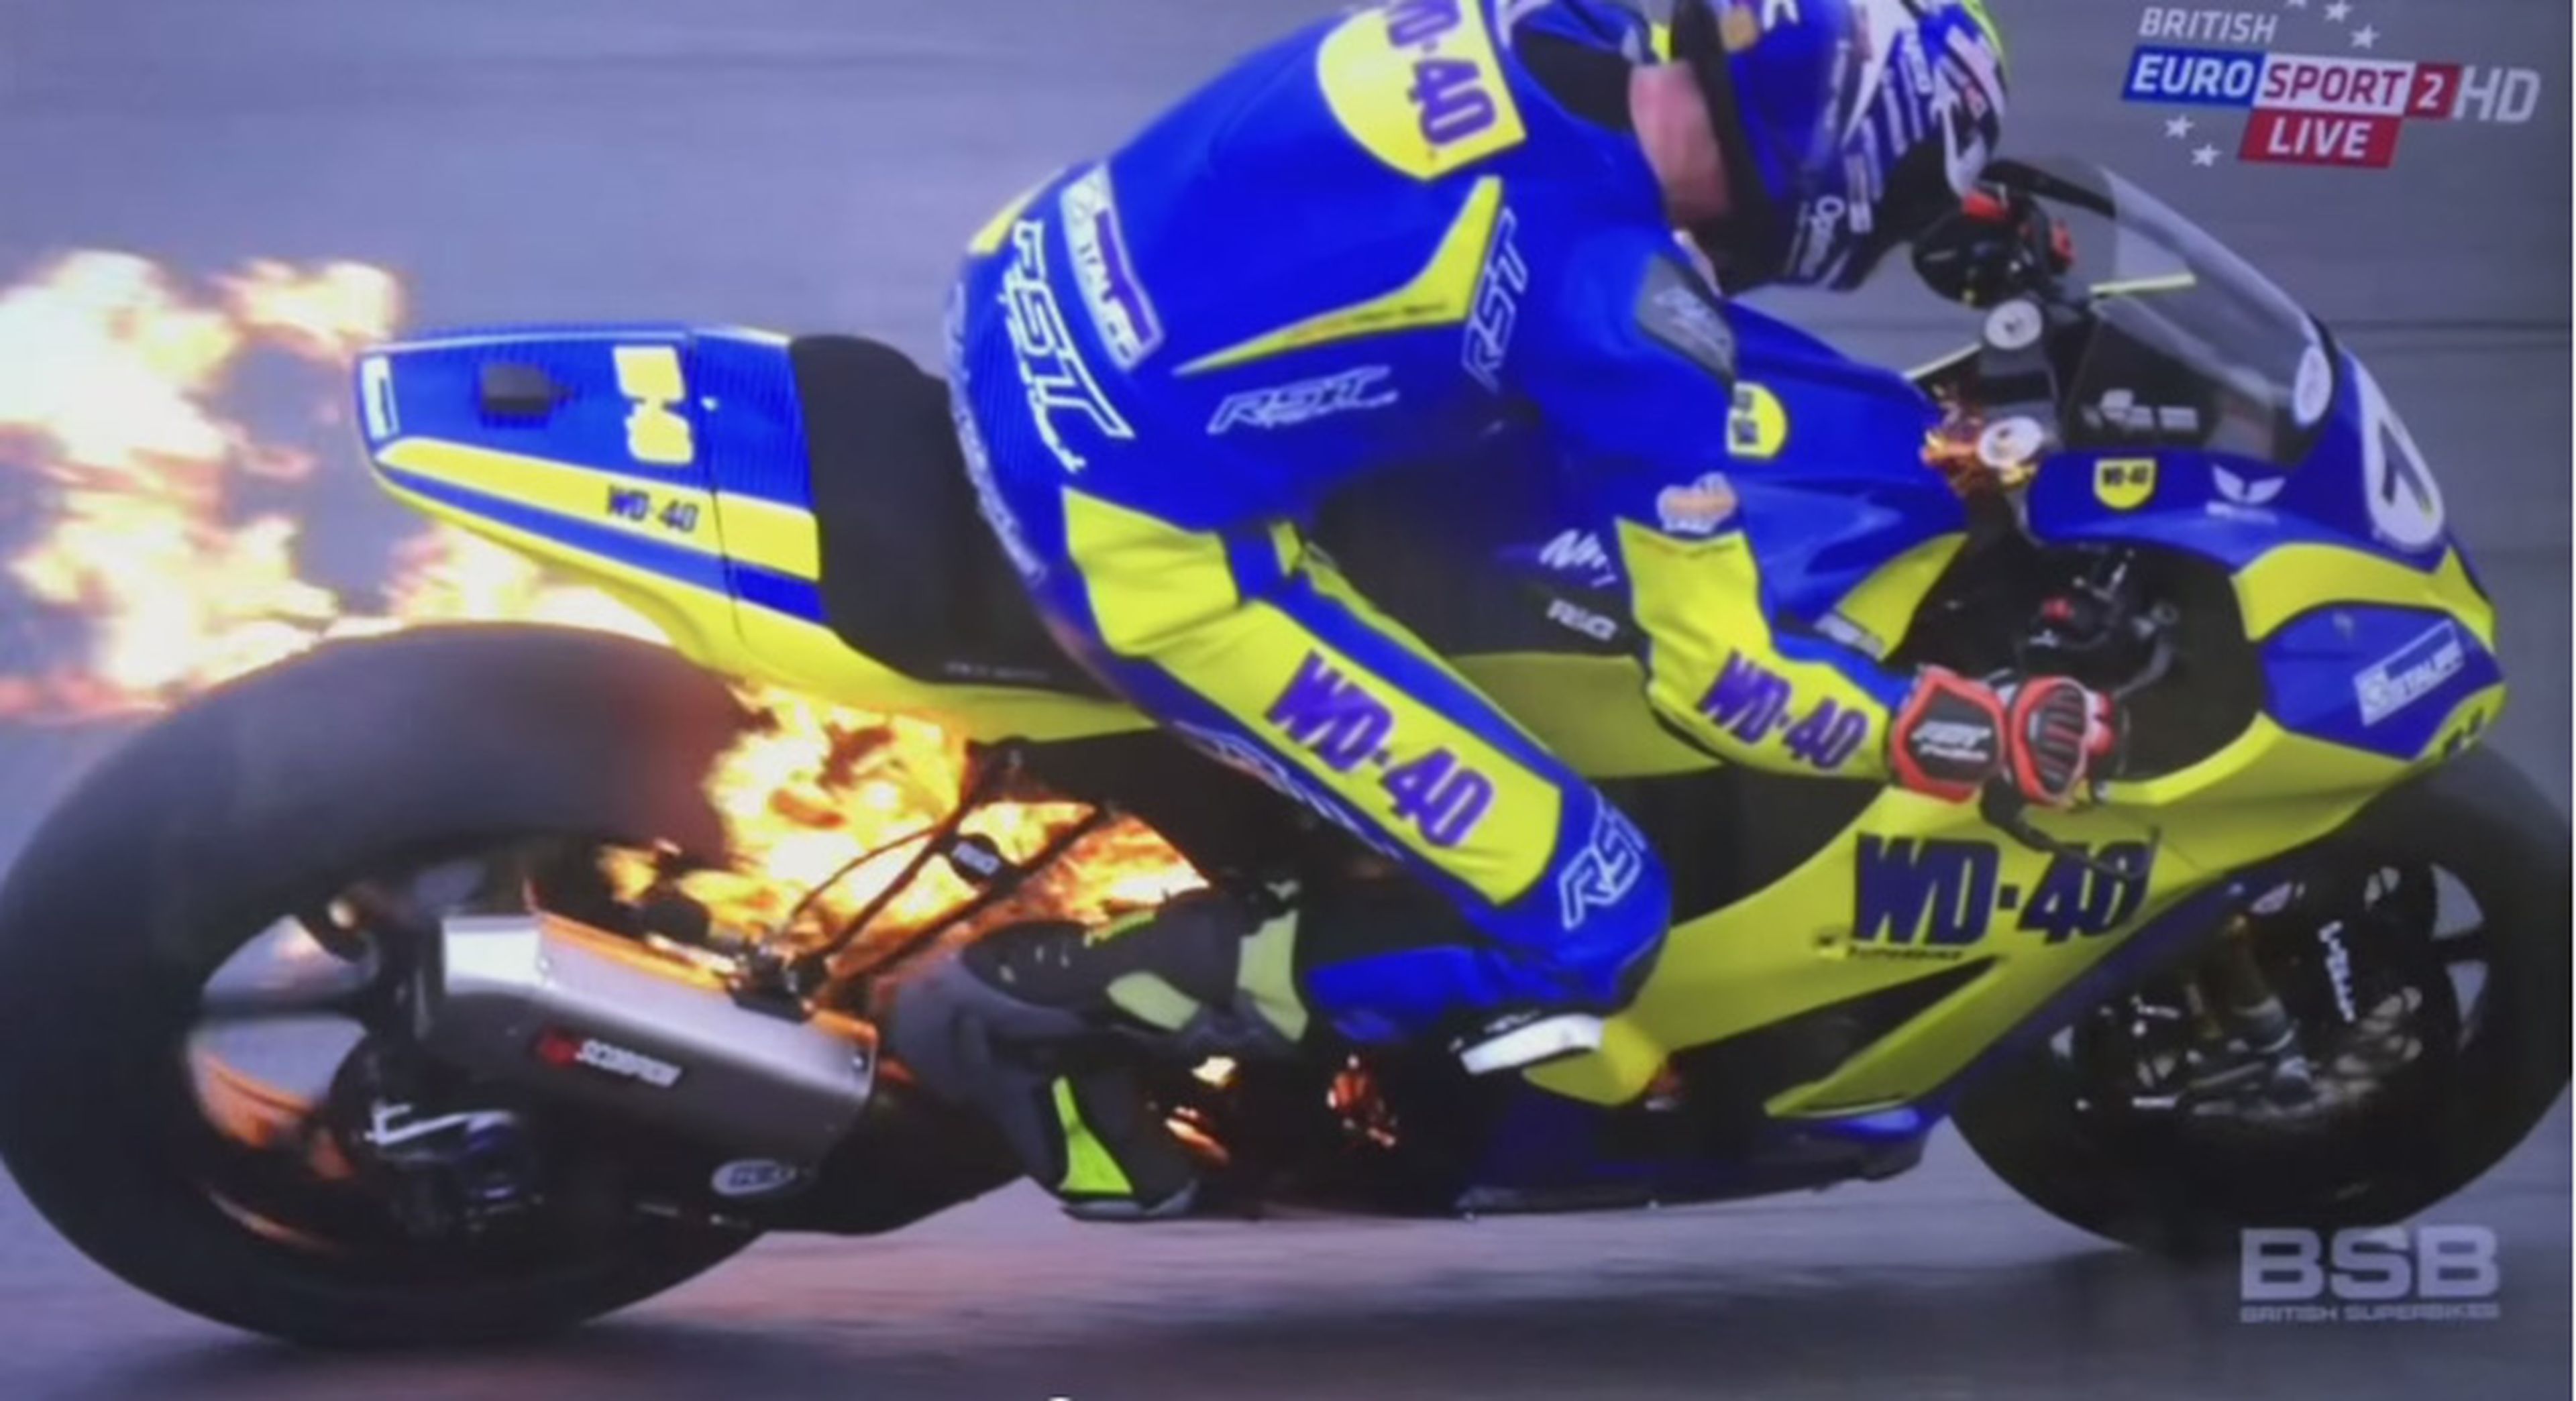 Vídeo: Salta de la moto ardiendo en plena carrera